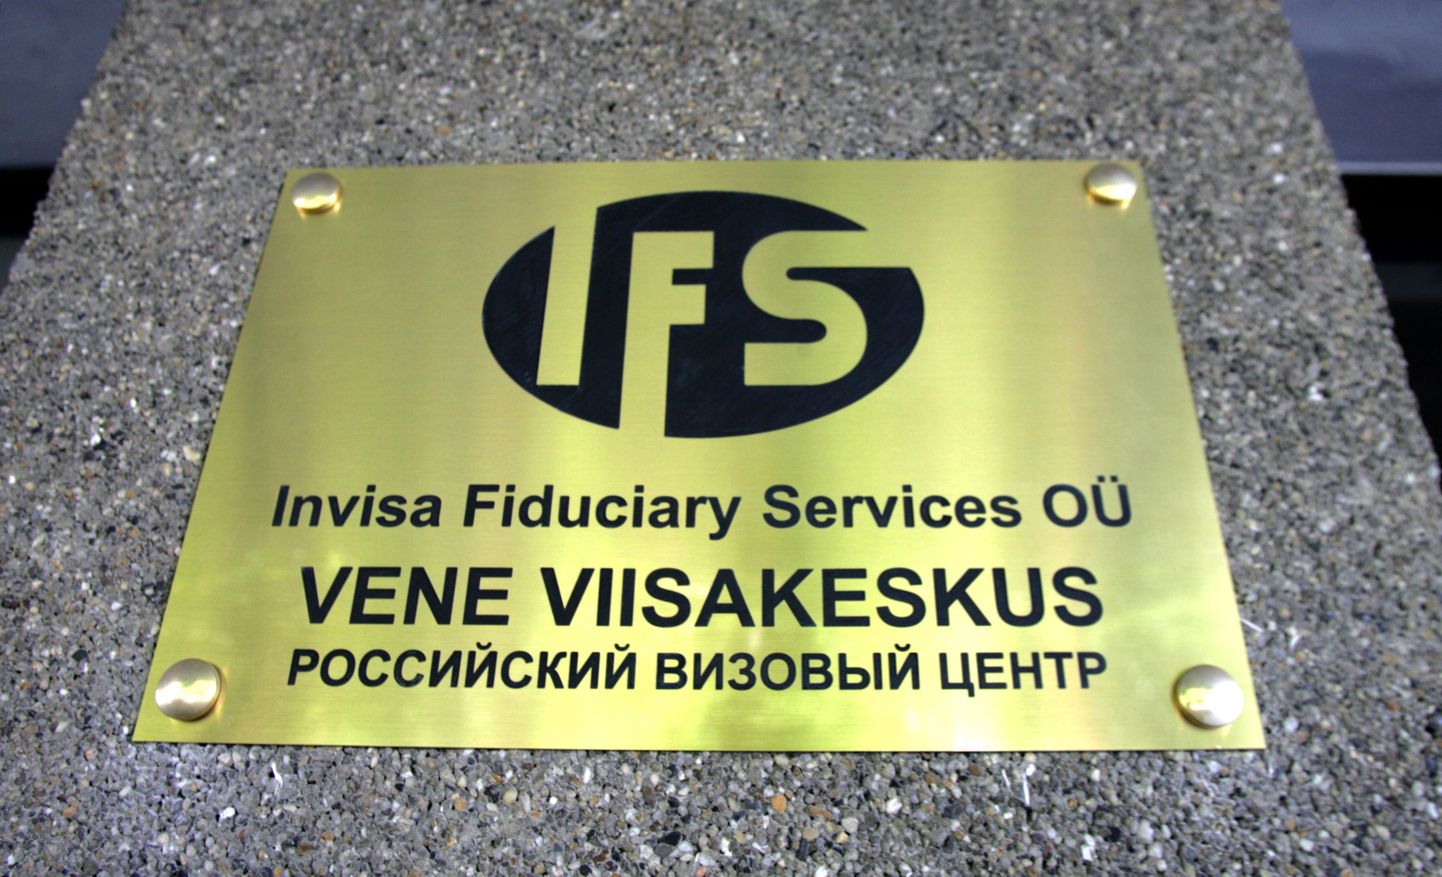 Tallinnas, aadressil Rävala pst.8 asuva Venemaa Viisakeskuse ametlik avamine. Viisaasjandust korraldab äriühing Invisa Fiduciary Services OÜ.